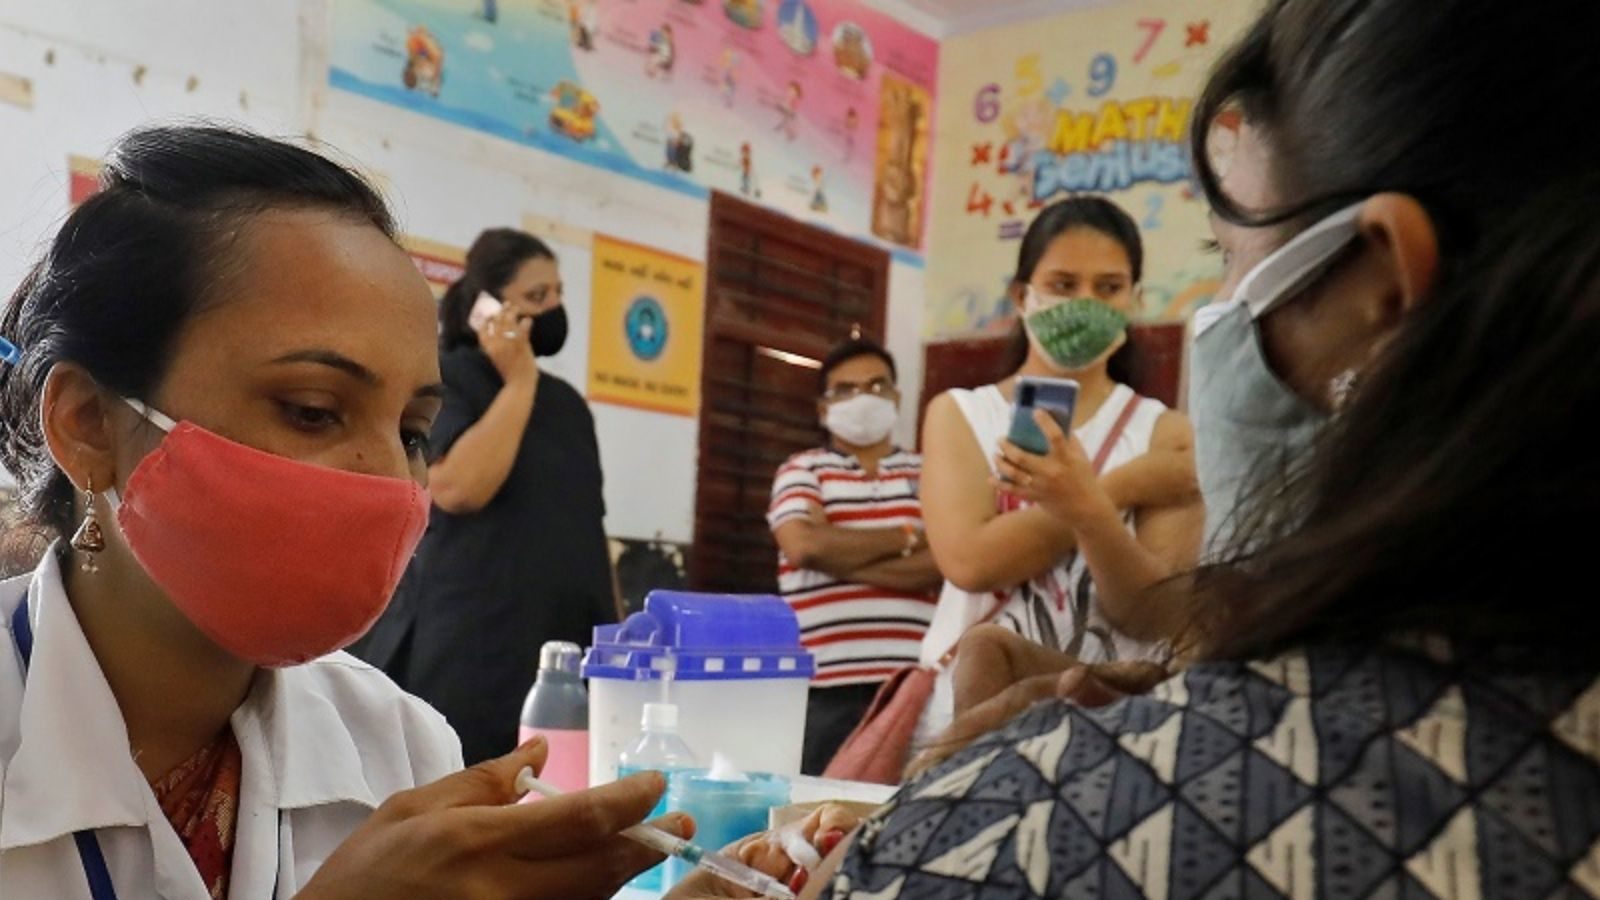 100 करोड़ वैक्सीनेश के बेहद करीब देश, सरकार ने टीकाकरण अभियान पर जारी किया नया गीत